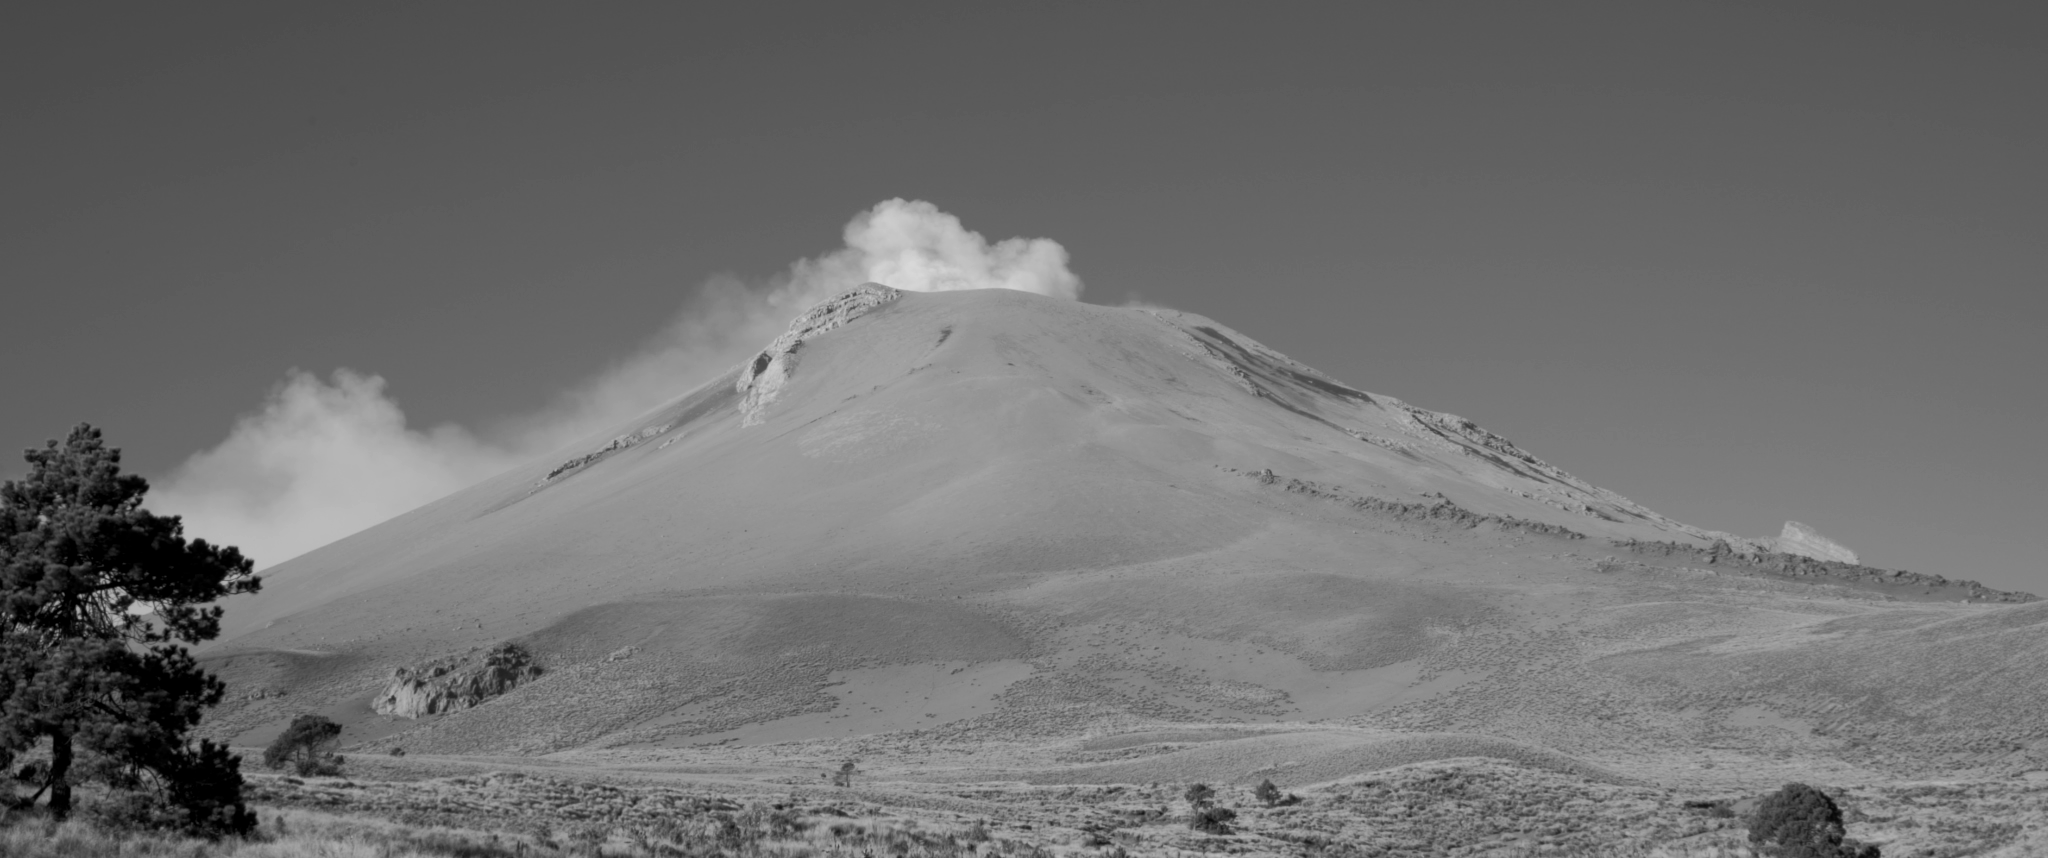 Las Nubes bajo el Volcán (Clouds Under the Mountain), Dir. Adán Ruiz.